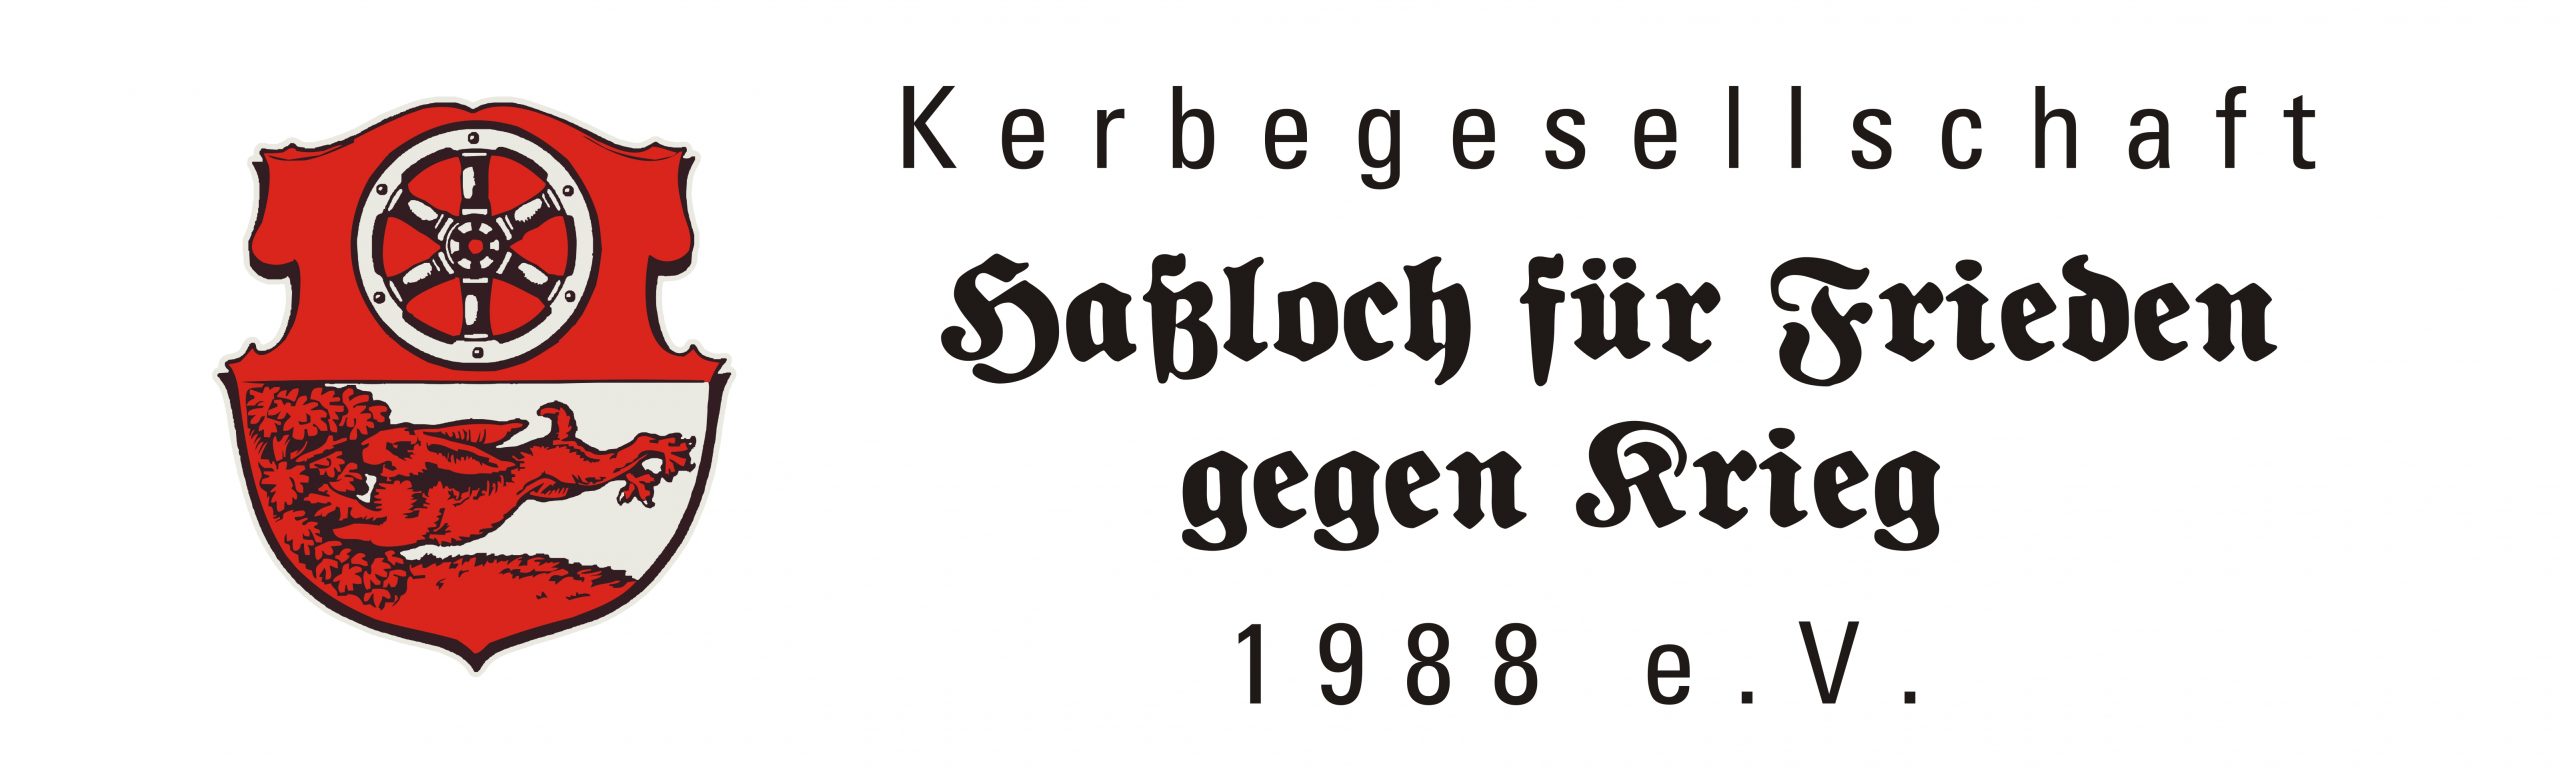 Kerbegesellschaft Haßloch 1988 e.V.